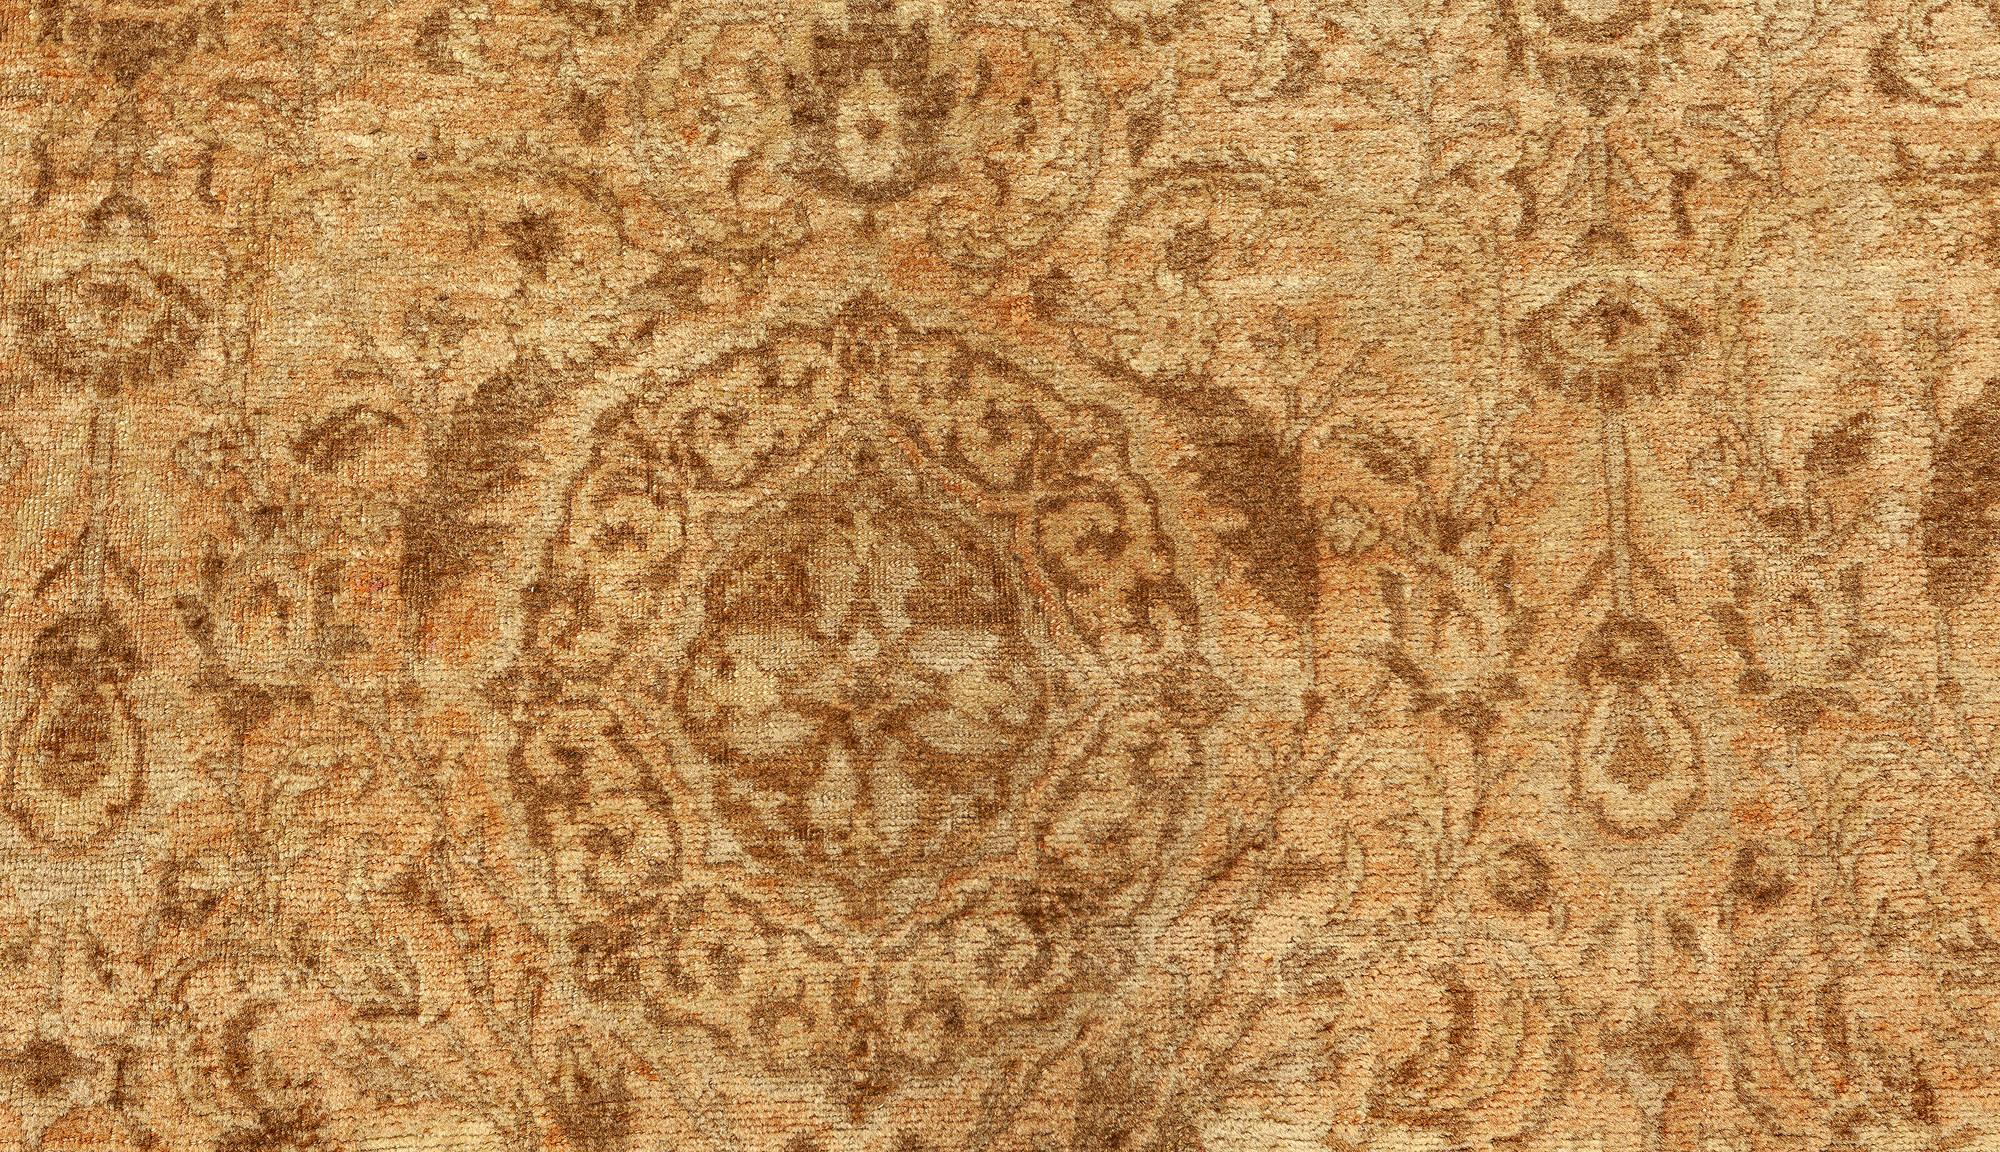 Vintage Persian Tabriz Brown Handmade Wool Rug
Size: 10'10